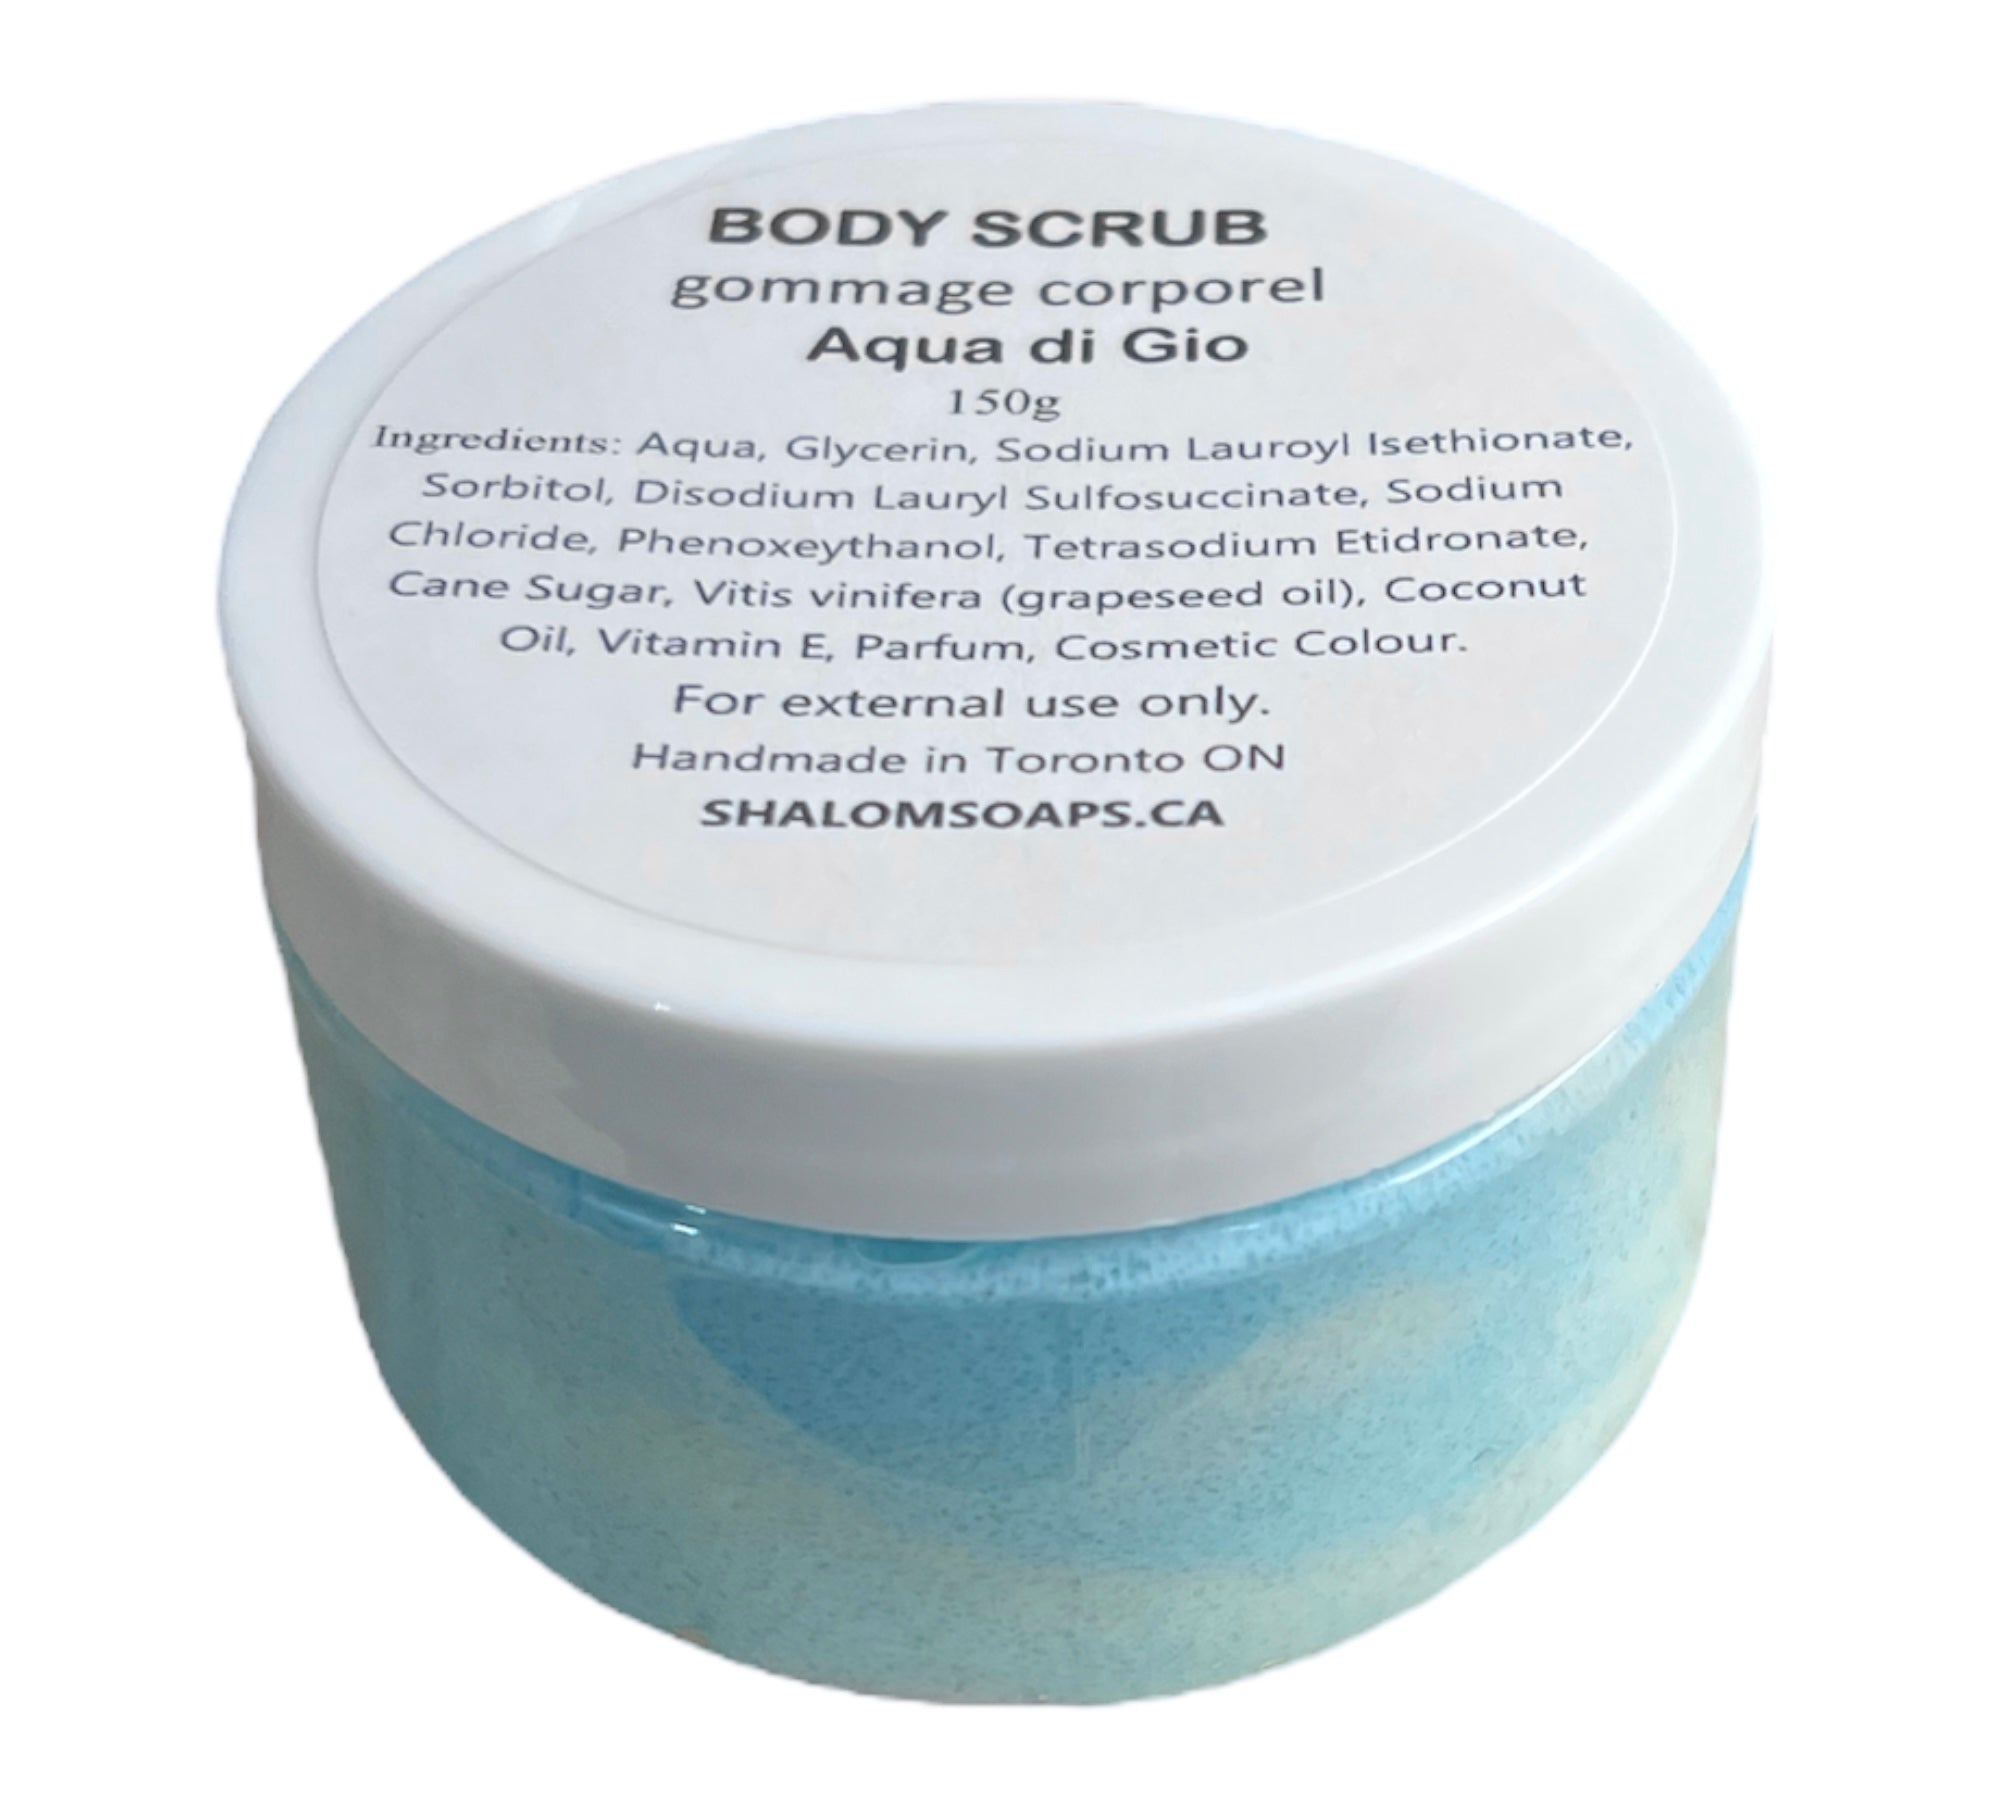 Body Scrub - Aqua di Gio